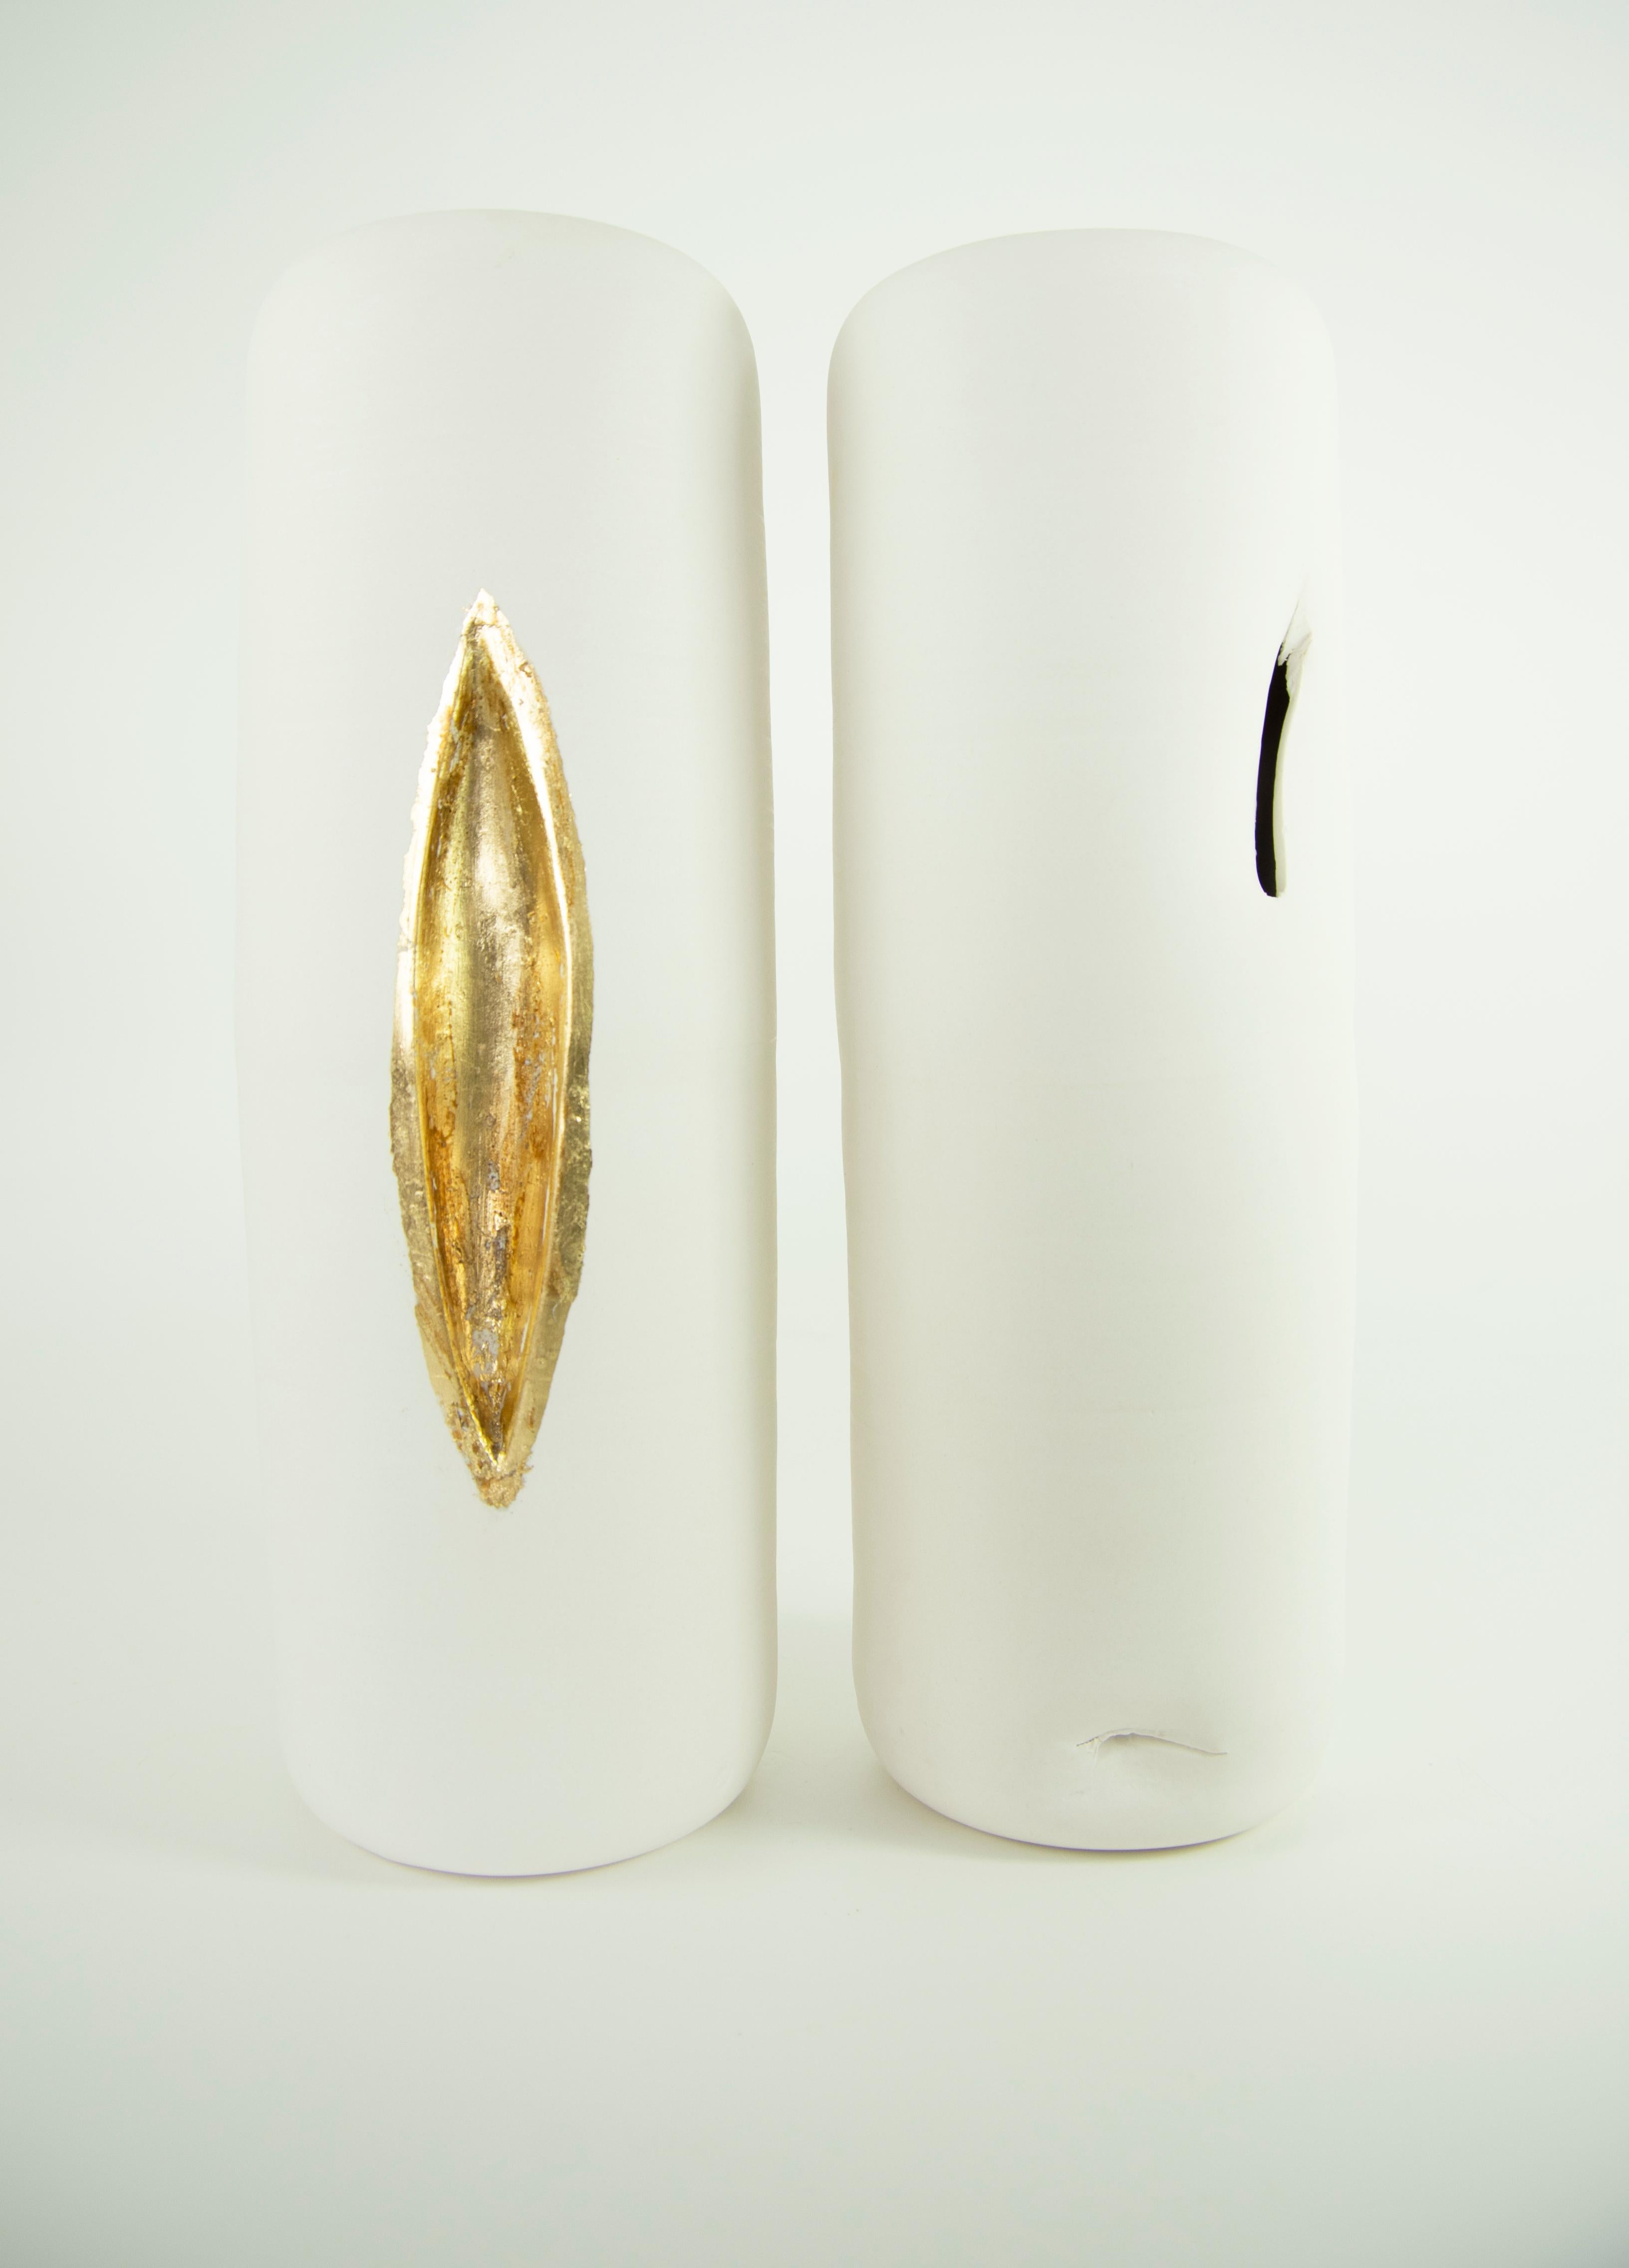 Ensemble de 2 objets décoratifs uniques en feuille d'or Volcano de Dora Stanczel
Exemplaire unique.
Dimensions : D 13 x L 13 x H 35 cm (chacun).
MATERIAL : Porcelaine et feuilles d'or.

Je crée des pièces en porcelaine sur mesure et luxueuses avec